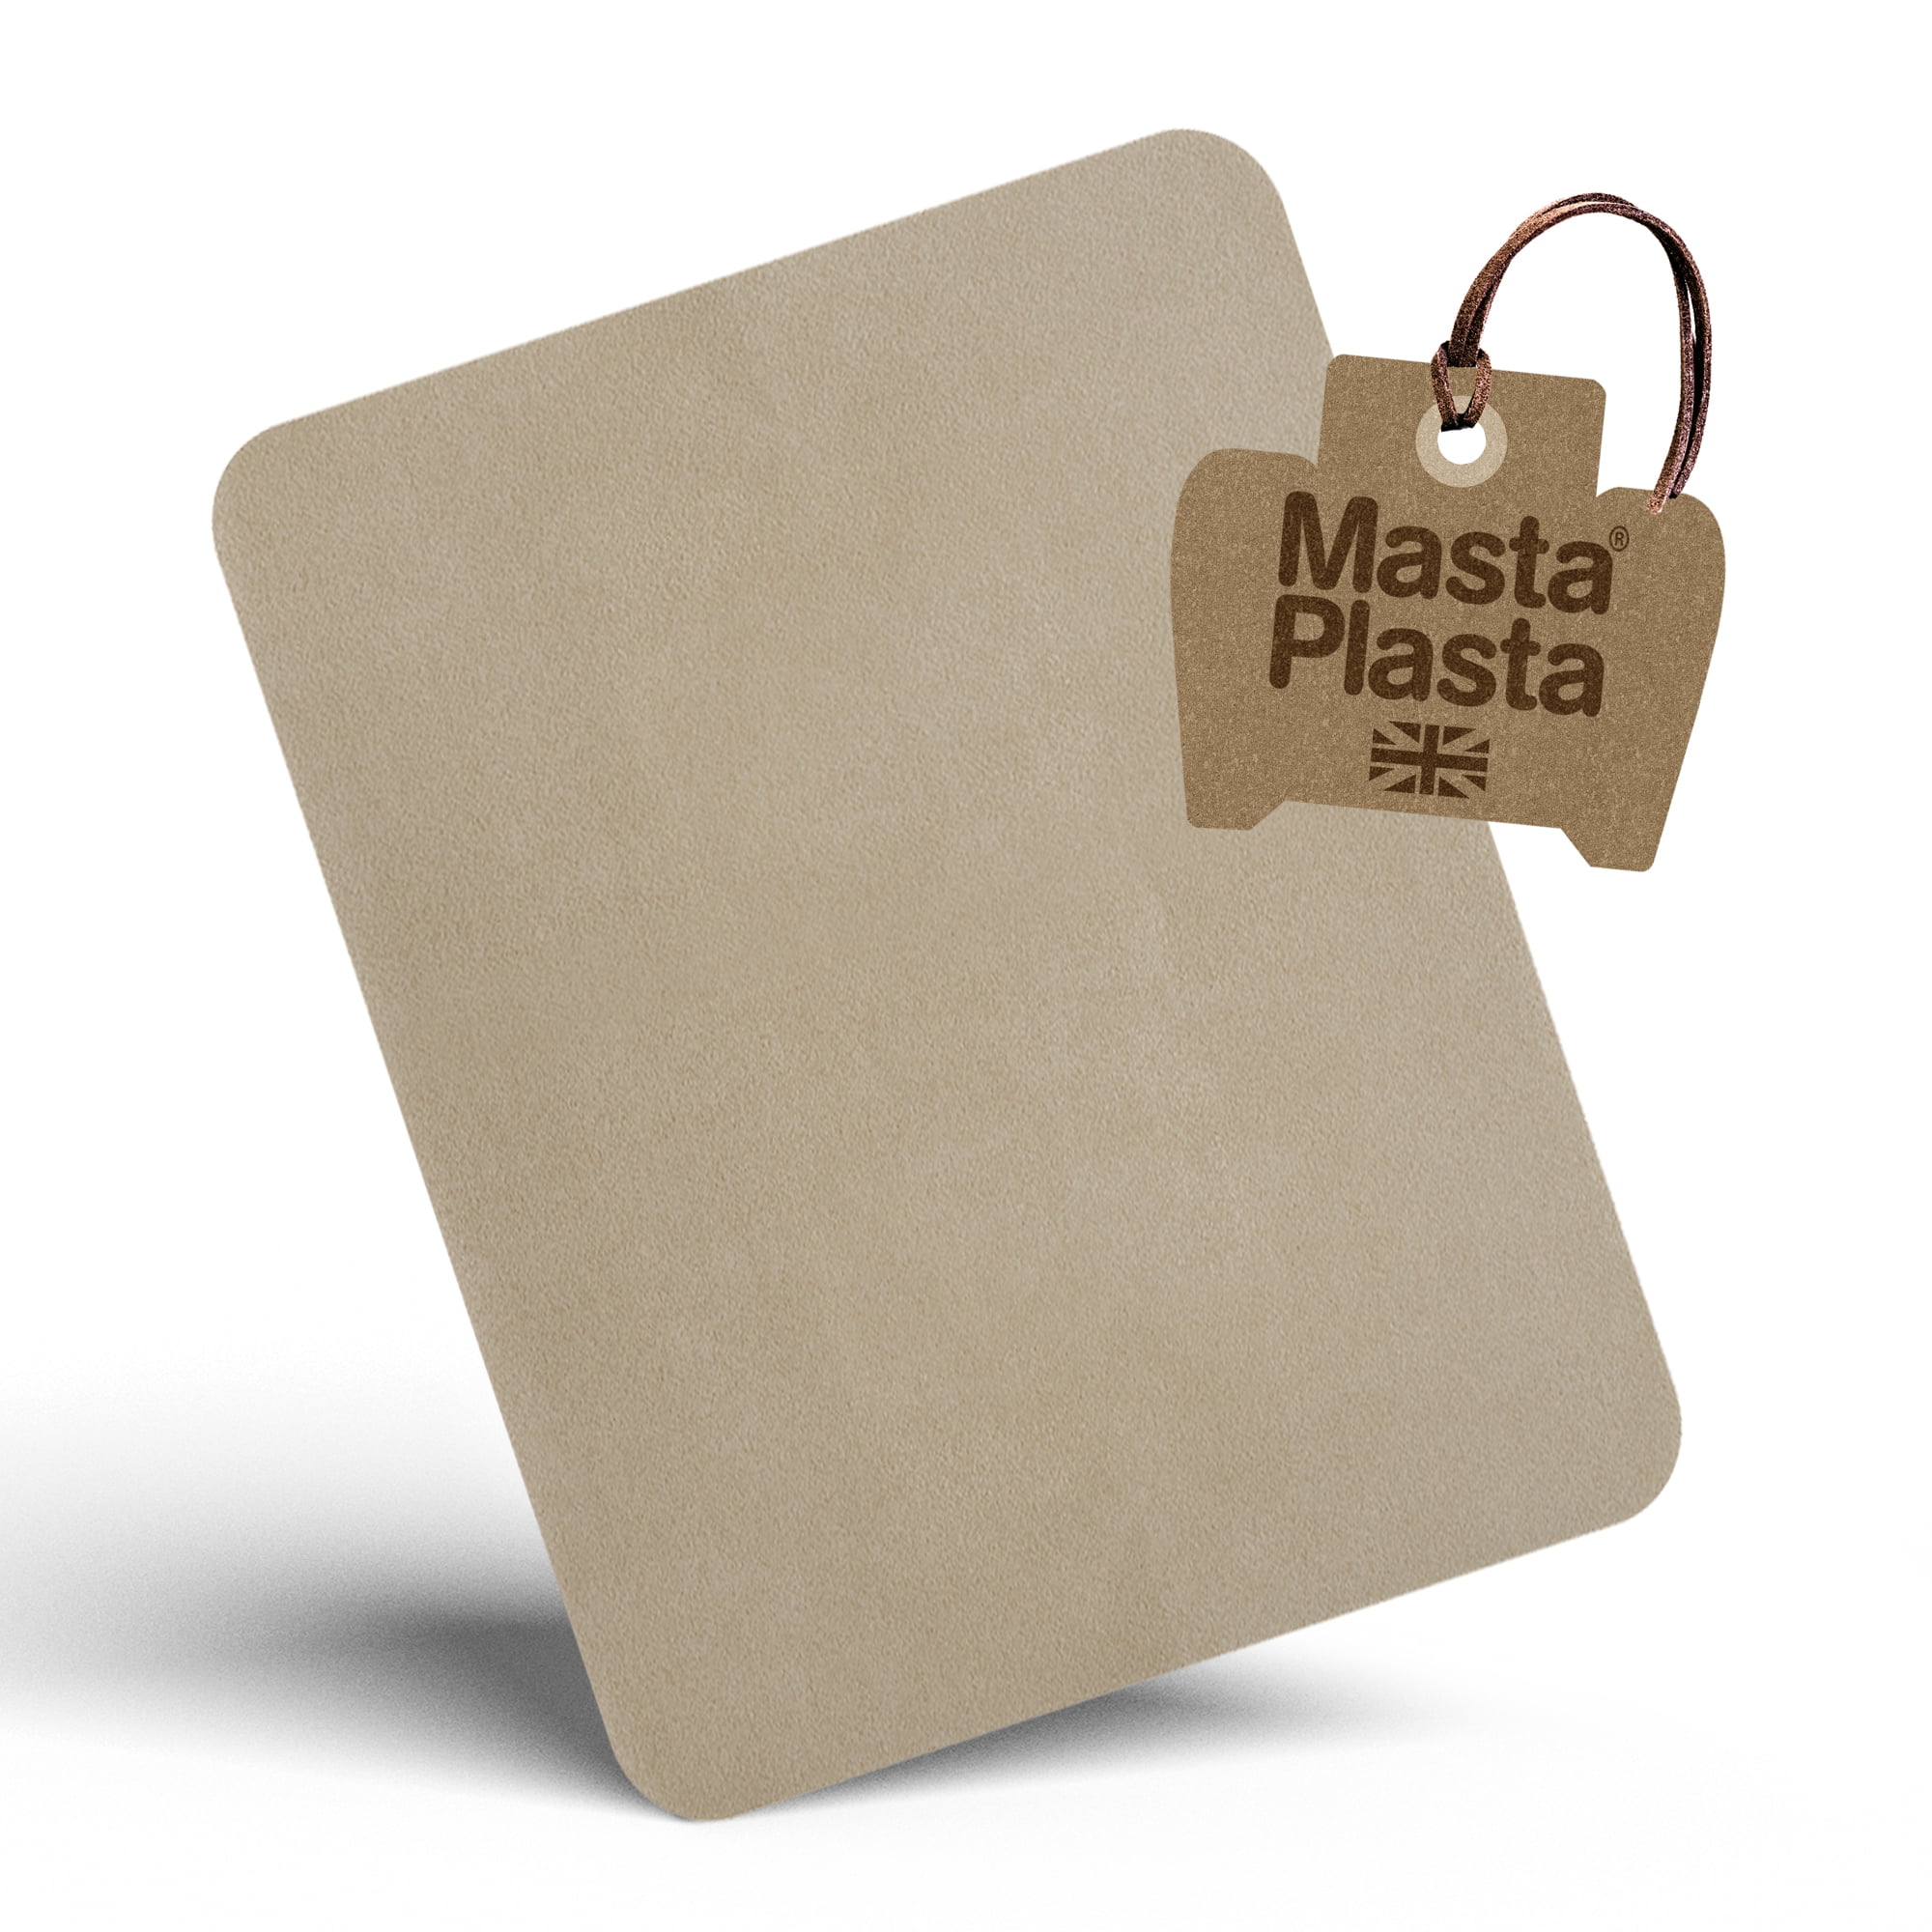 MastaPlasta Instant Self-Adhesive Premium Leather Repair Patch